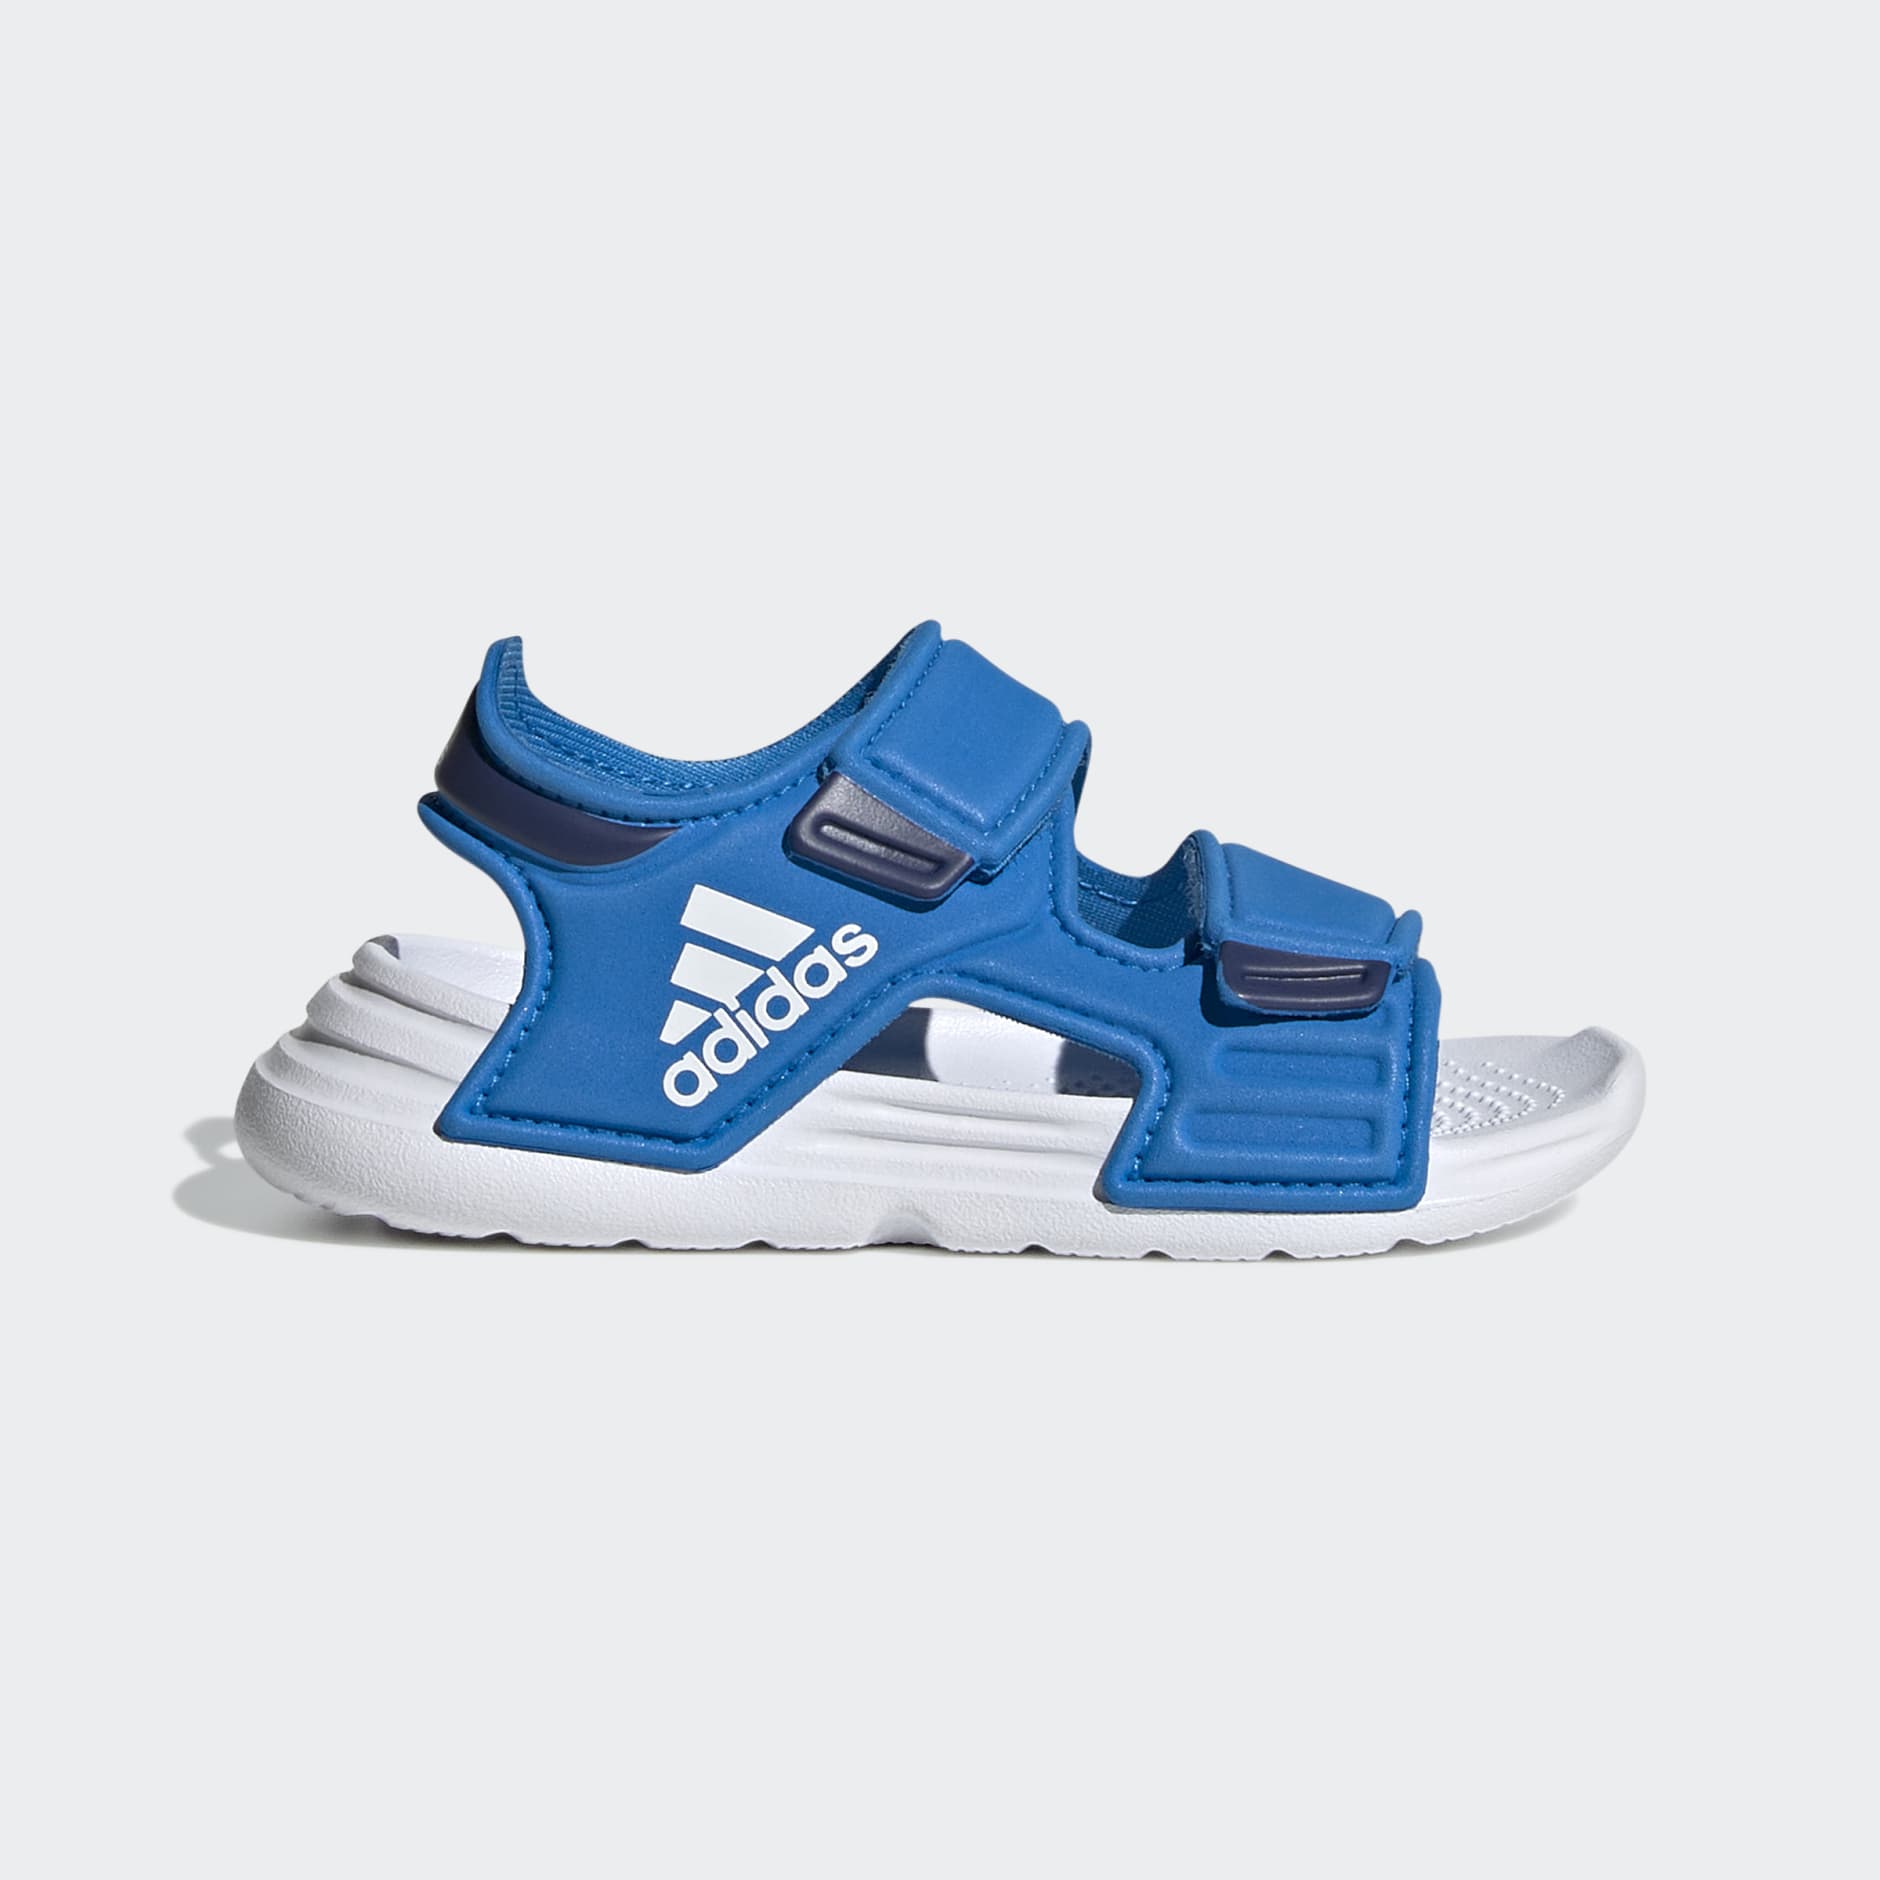 je bent onderbreken Circulaire Kids Shoes - Altaswim Sandals - Blue | adidas Bahrain